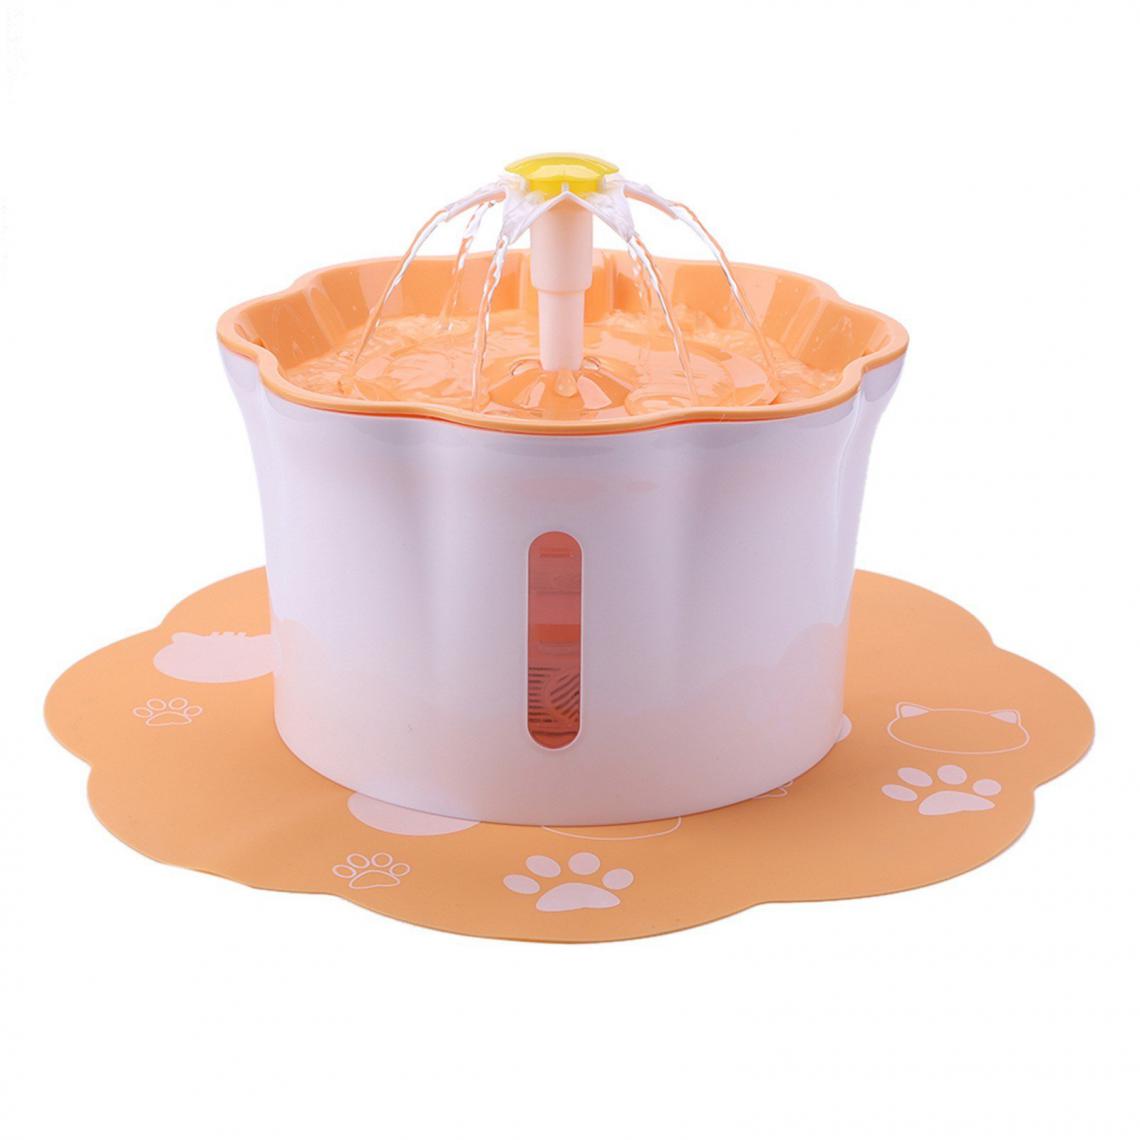 Justgreenbox - Distributeur d'eau électrique automatique bol d'alimentation pour chats chiens plusieurs animaux de compagnie 2.6L, Orange - Gamelle pour chat